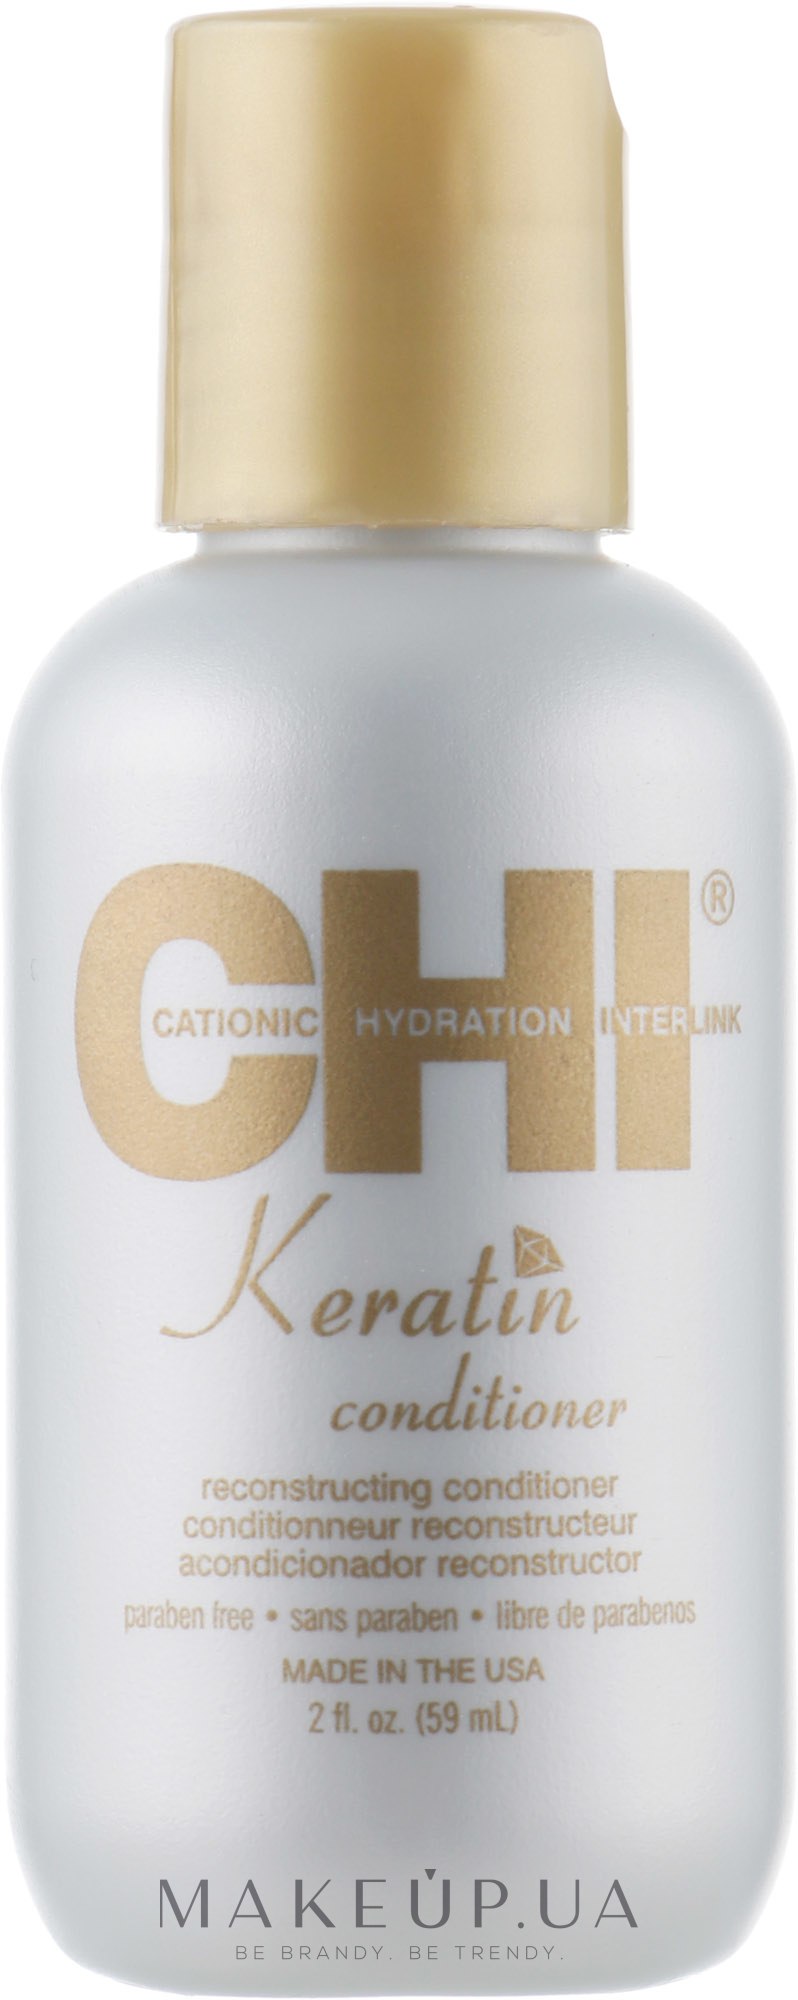 Восстанавливающий кератиновый кондиционер для волос - CHI Keratin Conditioner — фото 59ml